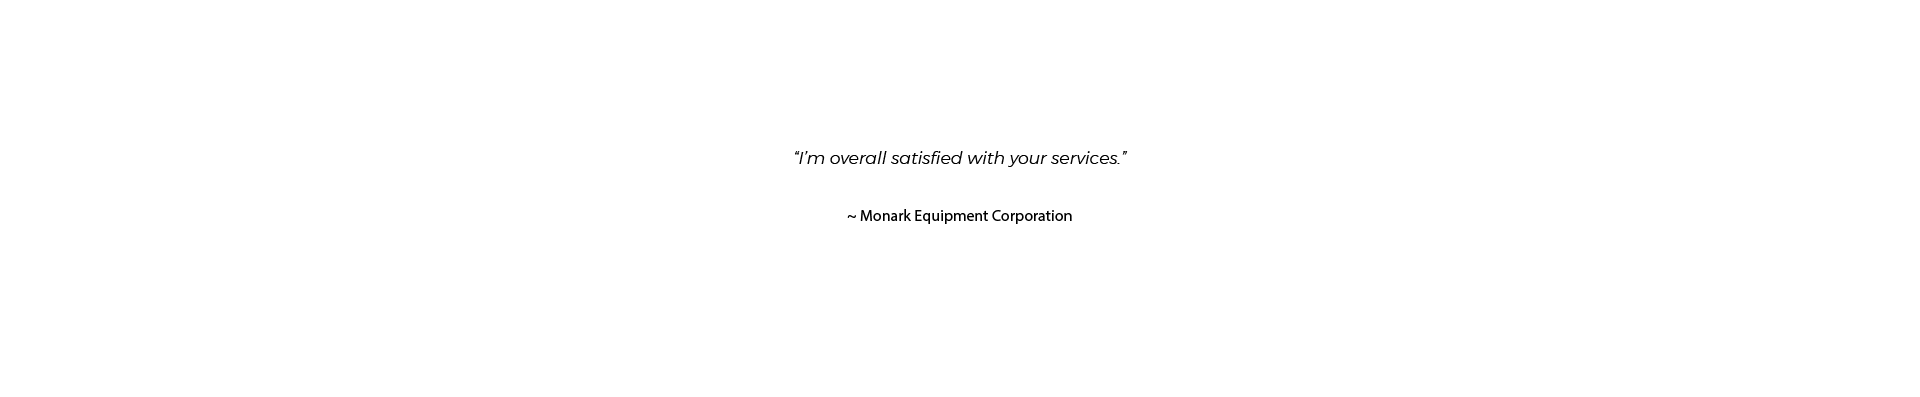 Client Testimonial - Monark